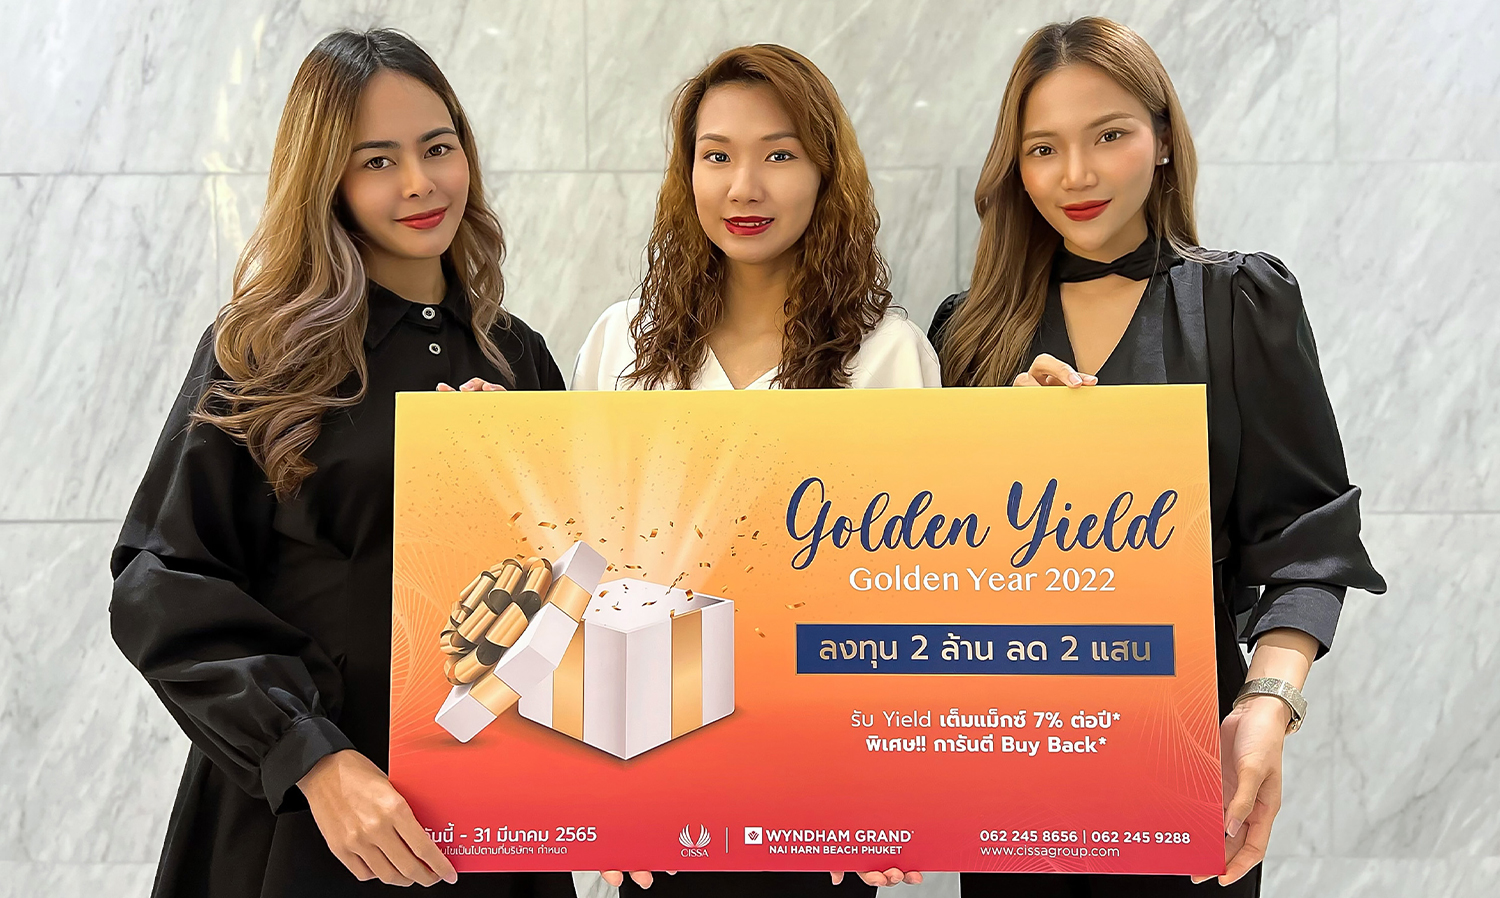 “ซิซซา กรุ๊ป” อัดแคมเปญเด็ด “GOLDEN YEAR GOLDEN YIELD 2022” เป็นเจ้าของร่วม “Wyndham Grand Nai Harn Beach Phuket” เพียง 1.8 ล้านบาท